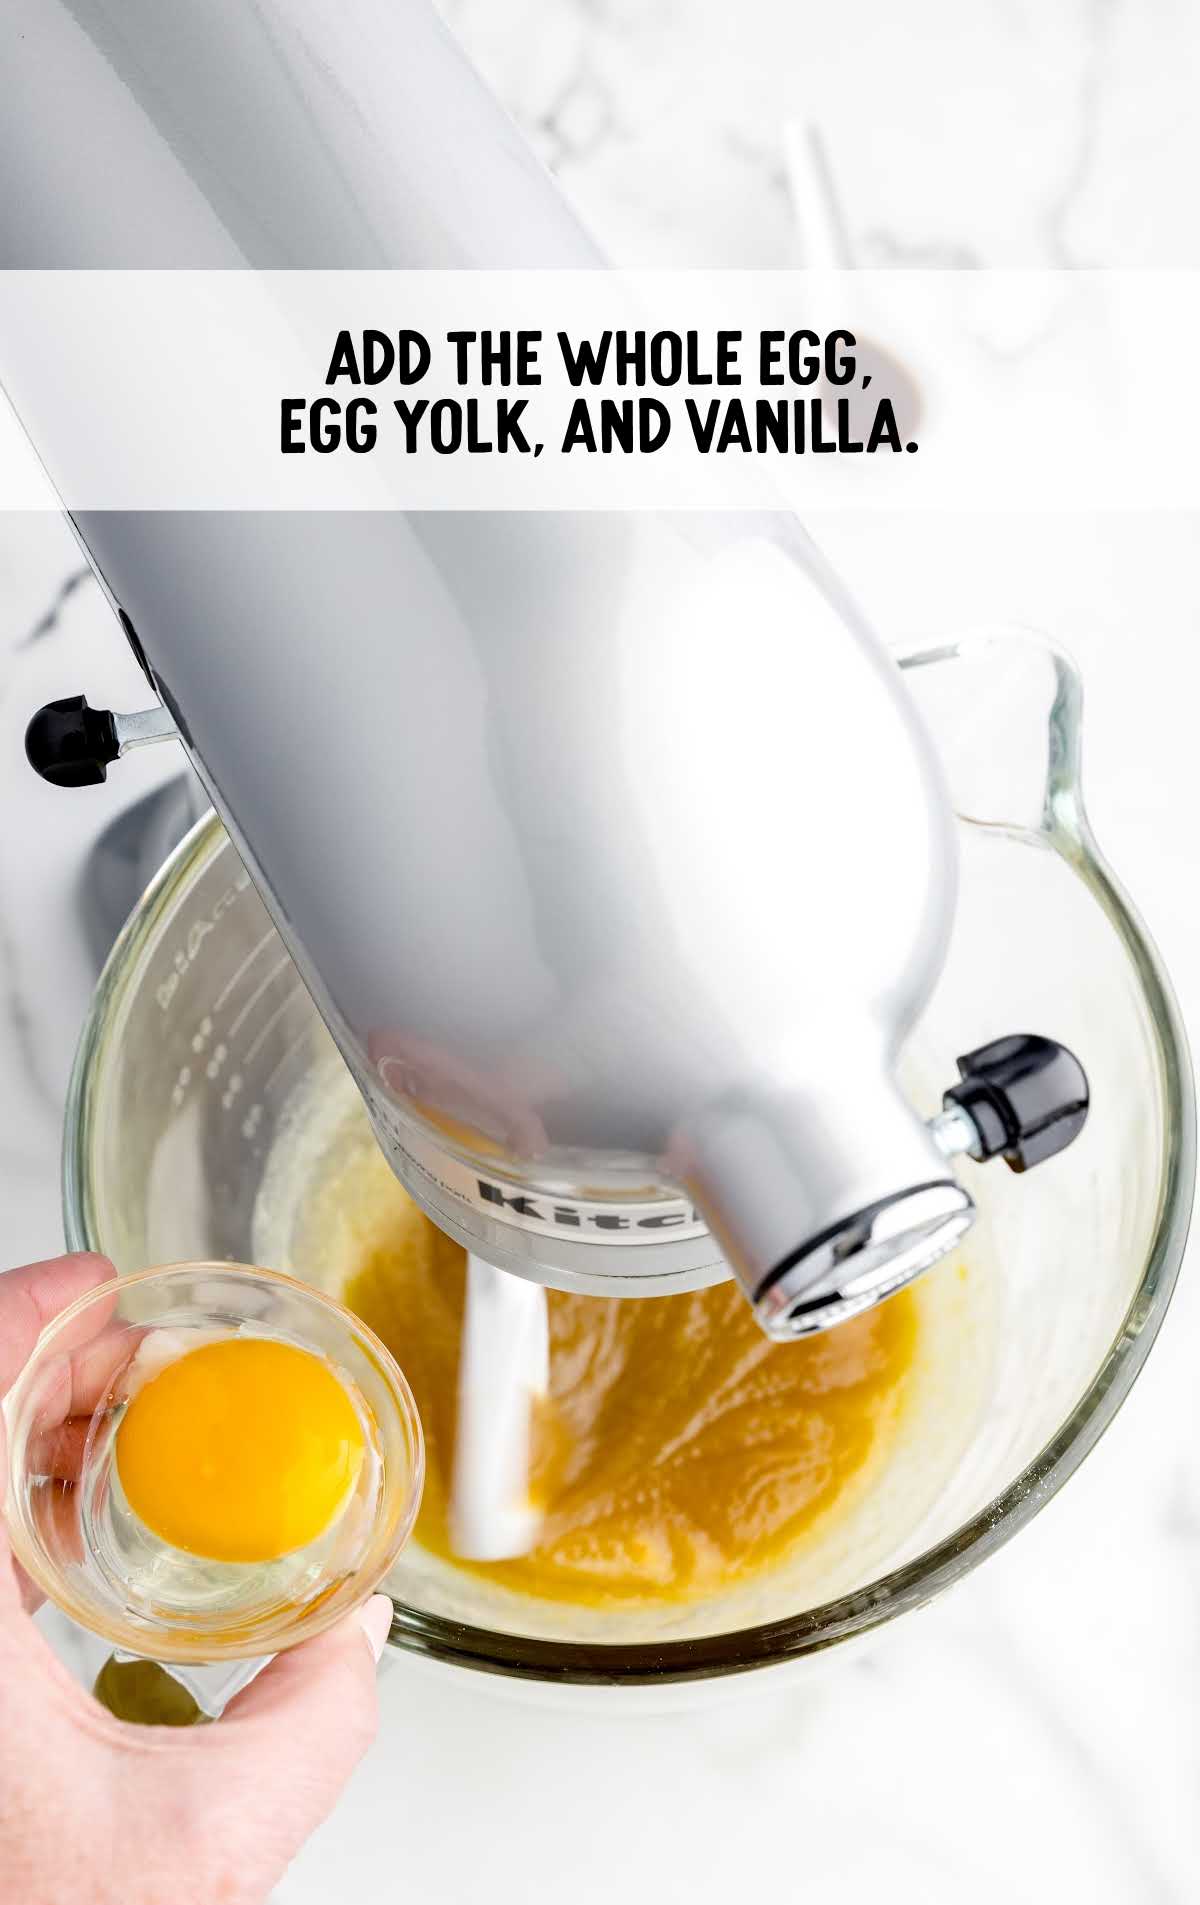 egg, egg yolk, and vanilla blended together